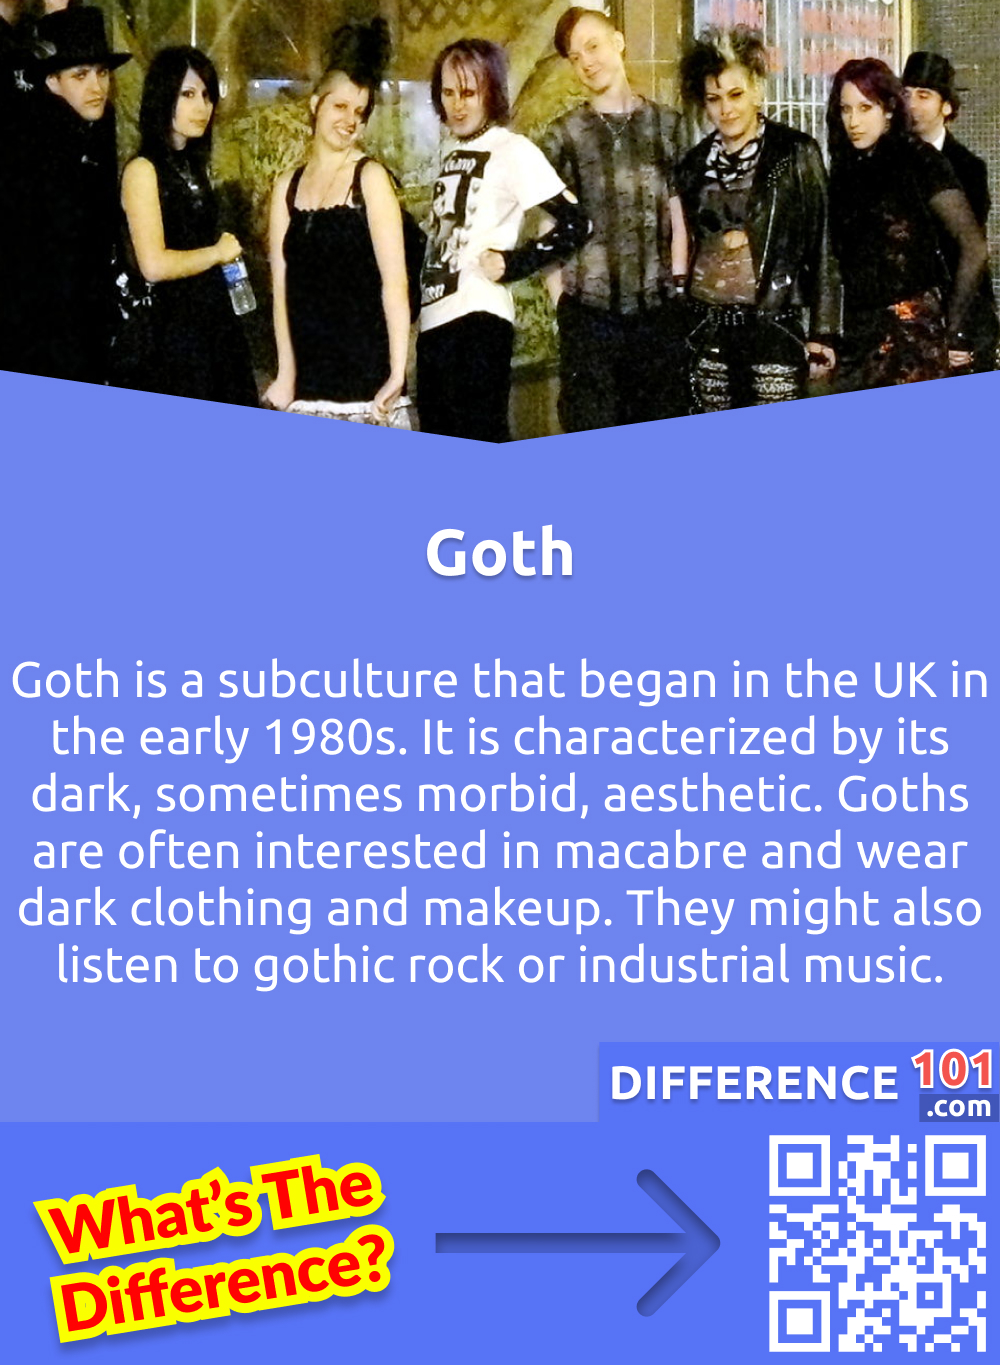 Qu'est-ce que le goth ? Le goth est une sous-culture qui a vu le jour au Royaume-Uni au début des années 1980. Elle se caractérise par une esthétique sombre, parfois morbide. Les goths s'intéressent souvent au macabre et portent des vêtements et du maquillage sombres. Ils peuvent également écouter du rock gothique ou de la musique industrielle.